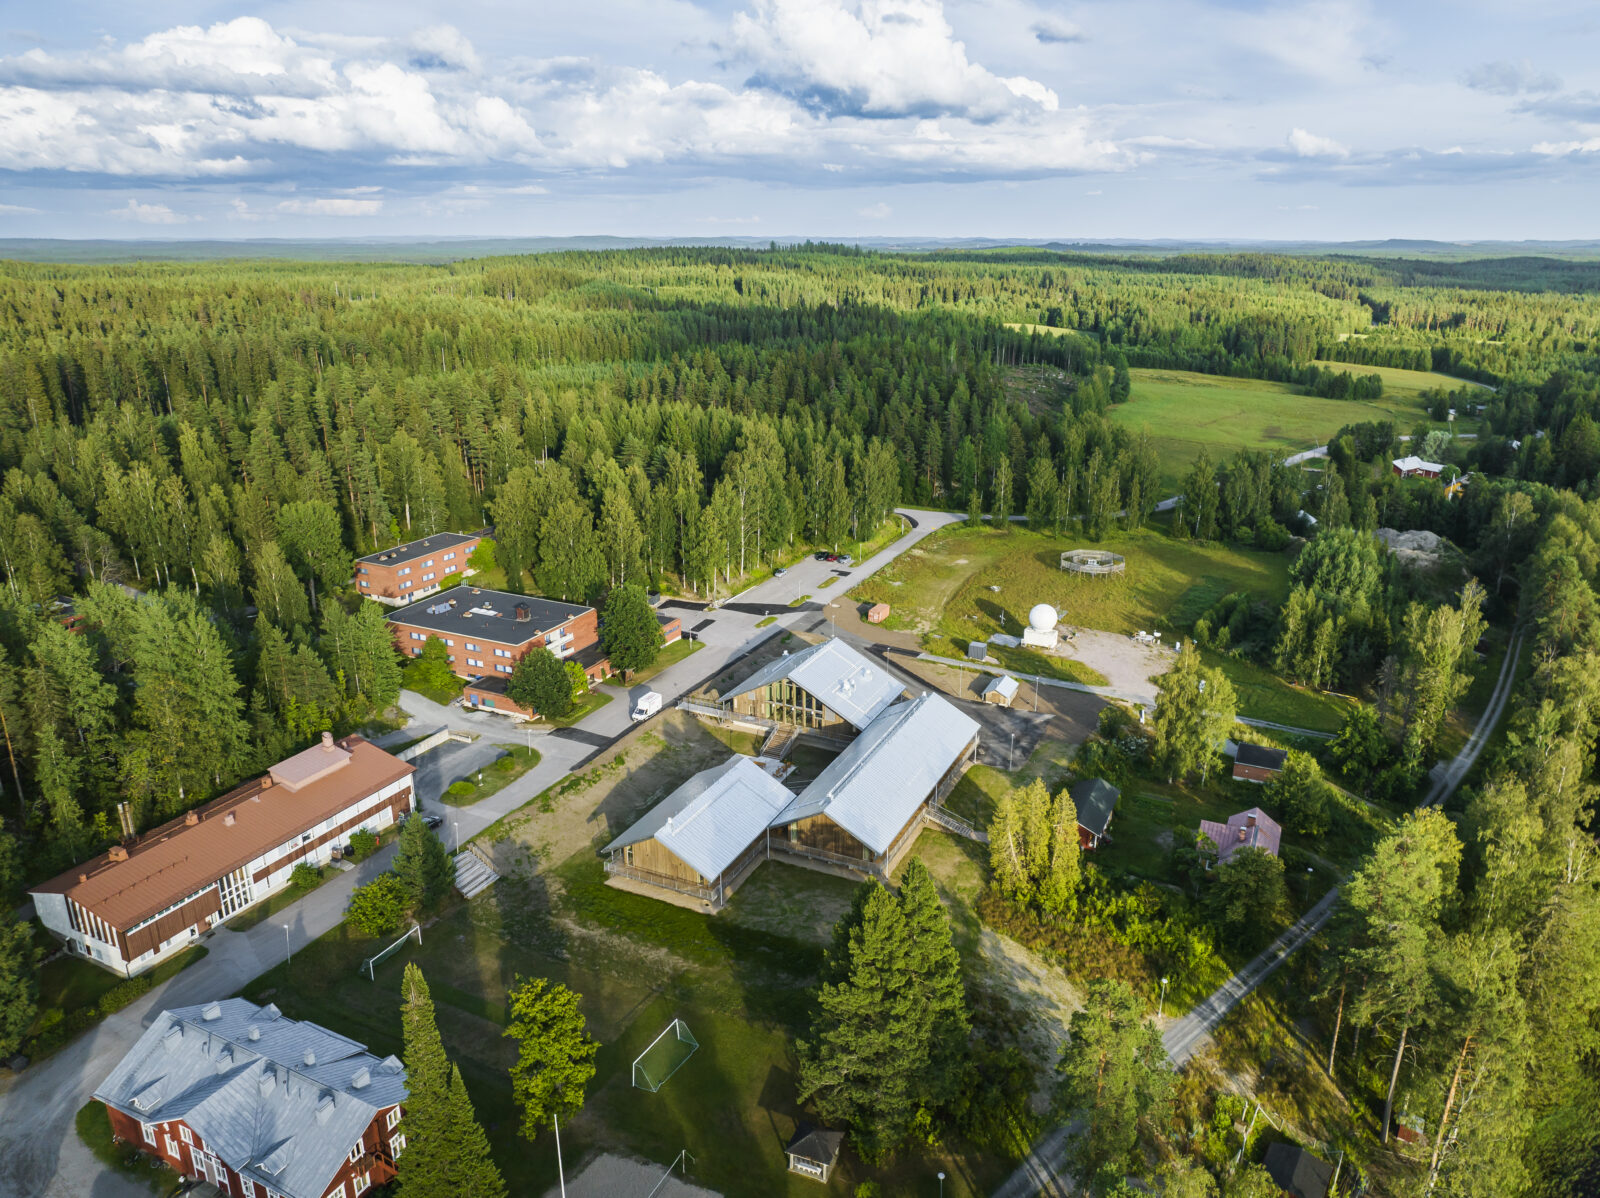 Hyytiälä forestry field station